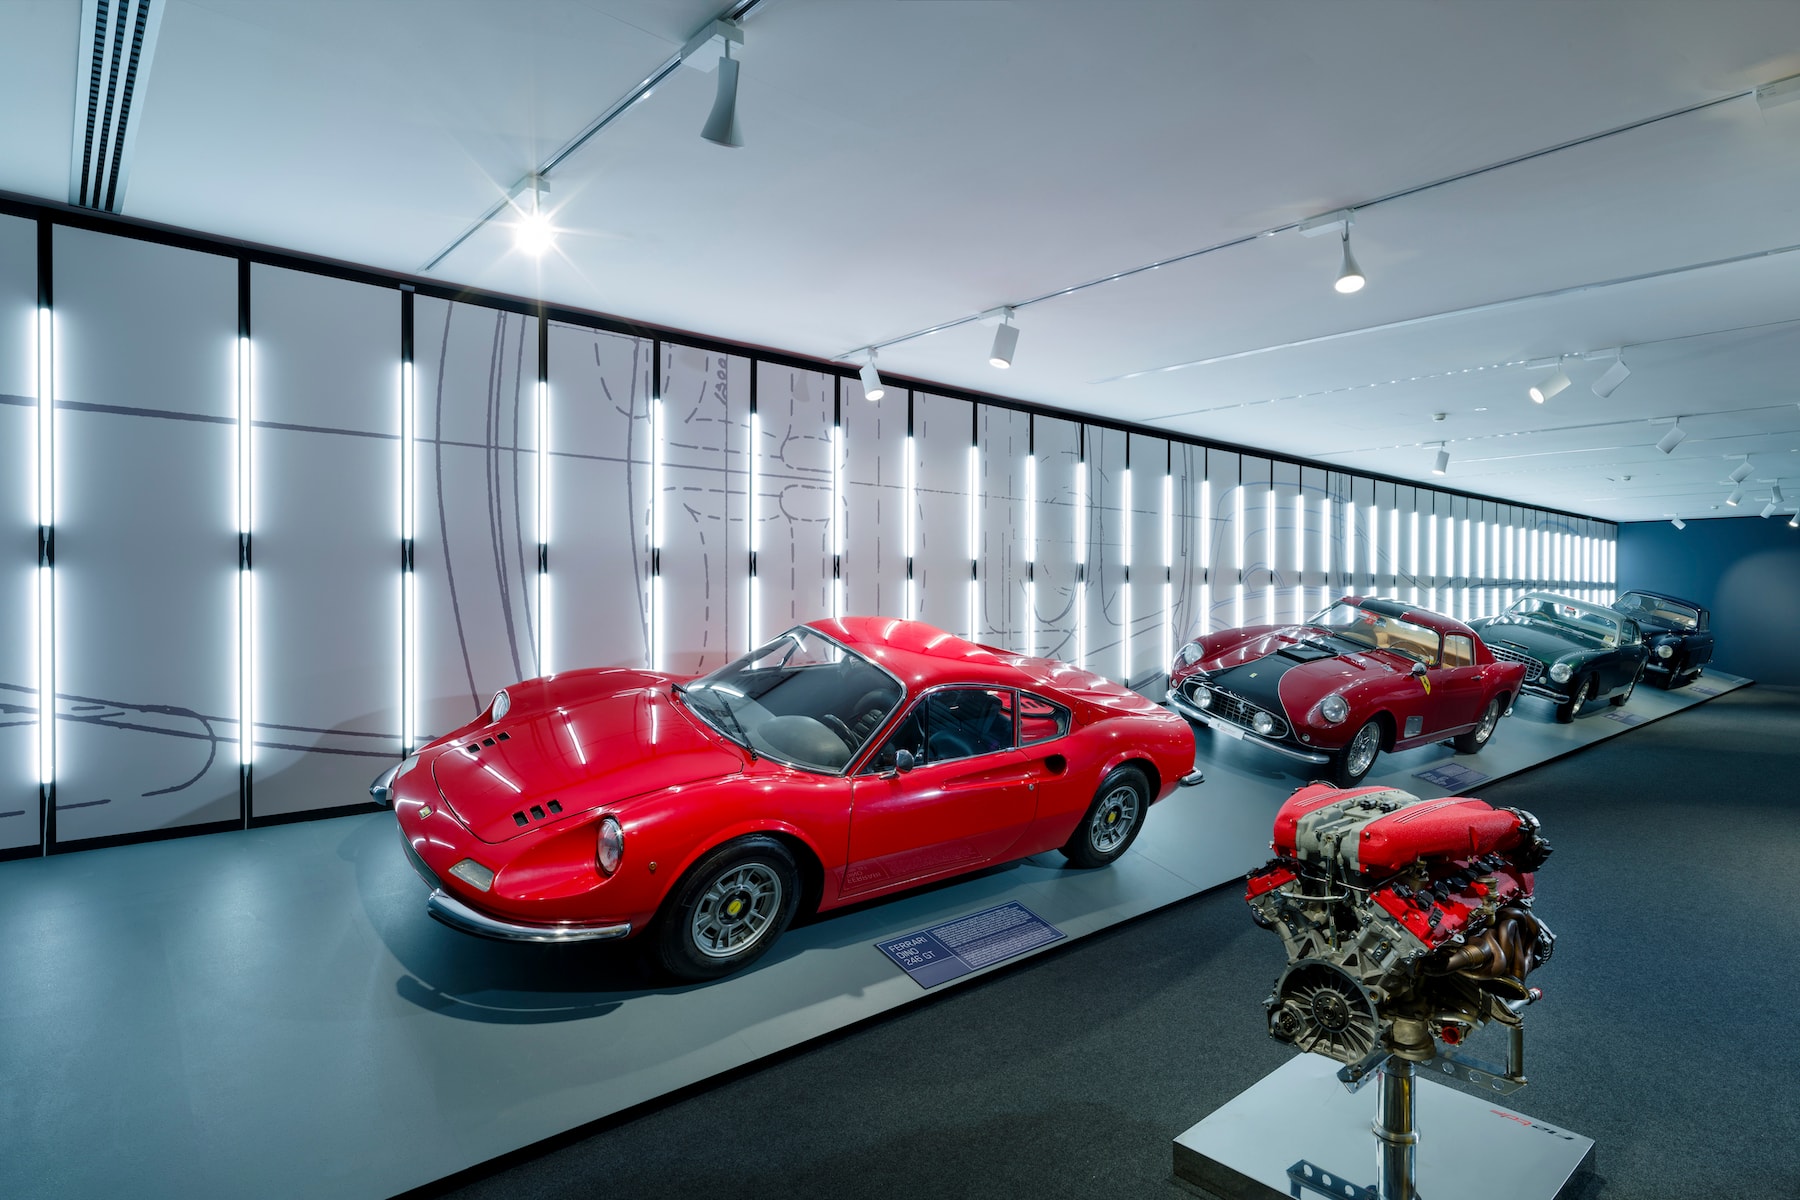 率先走進 Ferrari 最新「Driven by Enzo」和「Passion and Legend」展覽